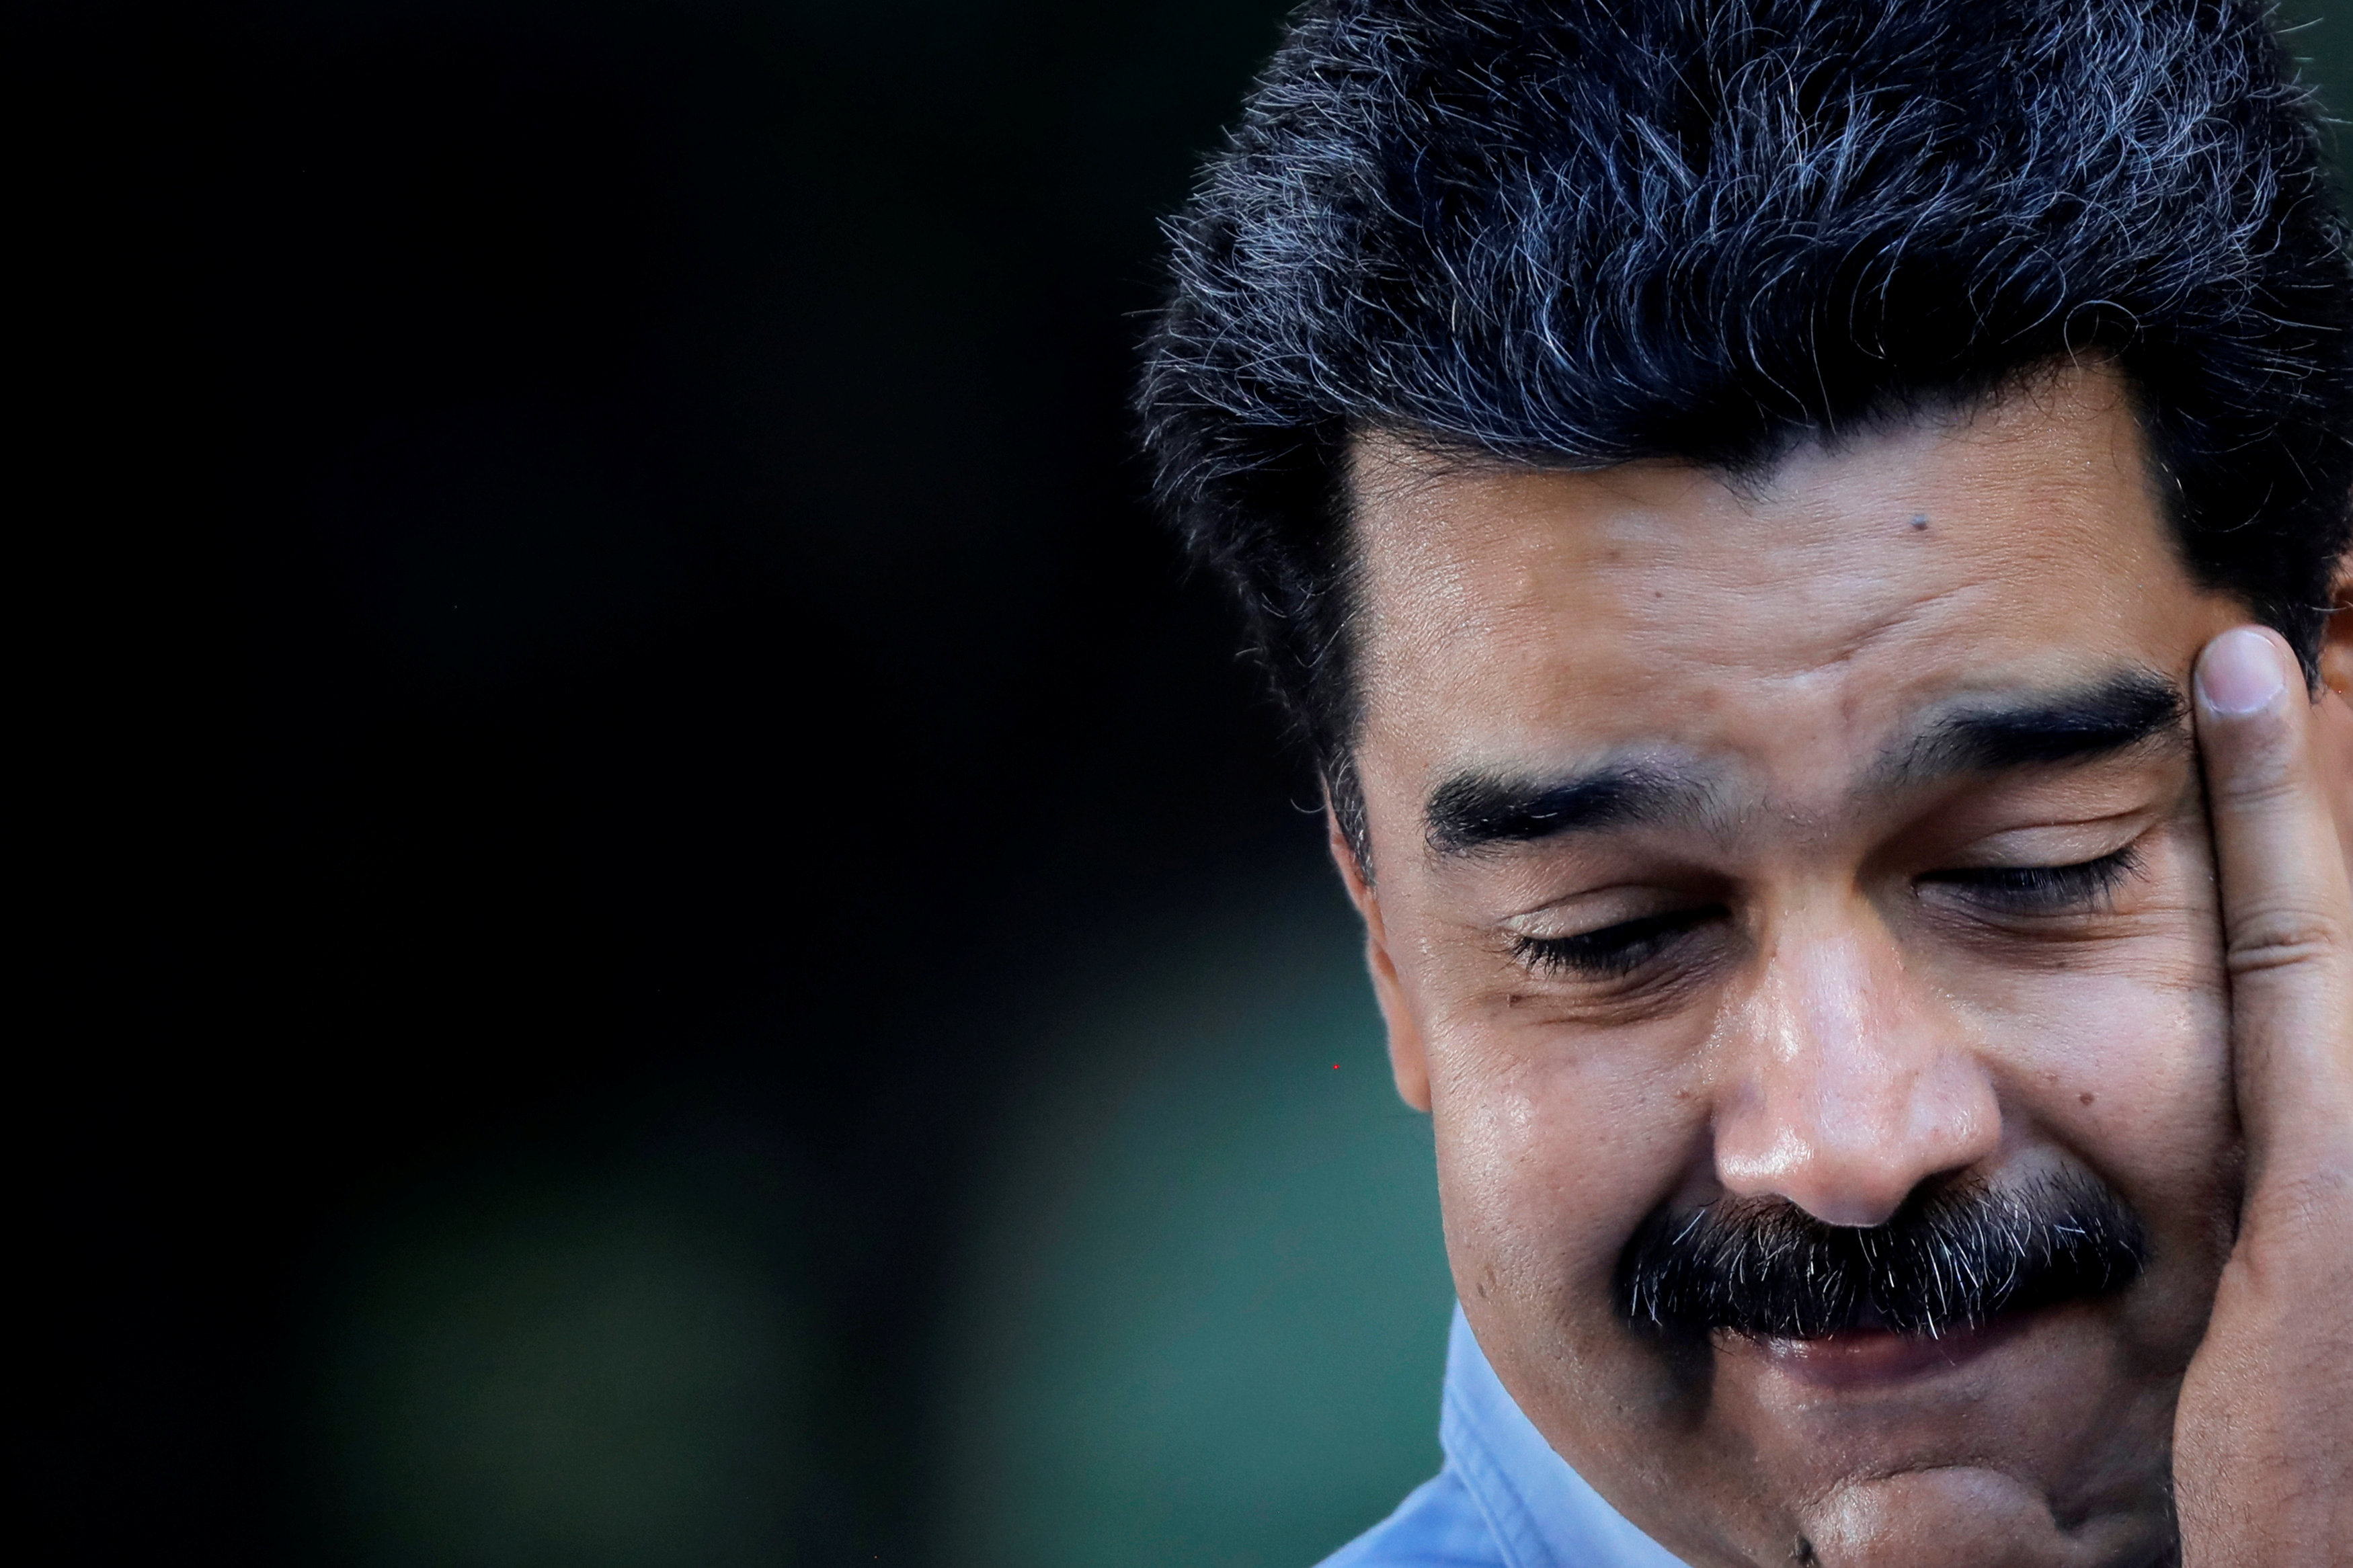 Internacional Socialista calificó la farsa de Maduro como un proceso ilegítimo (Comunicado)